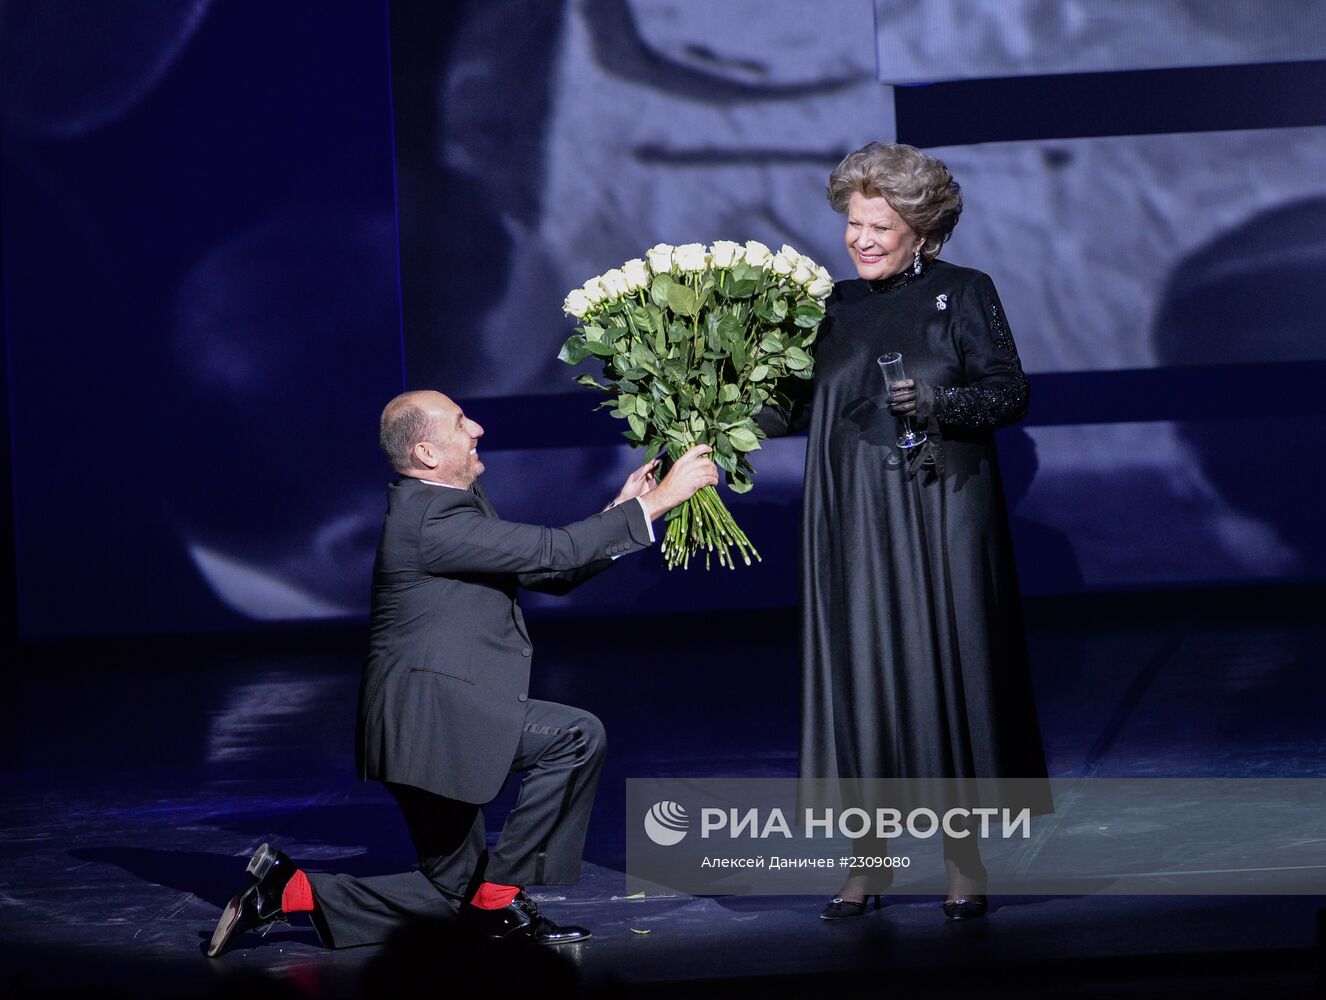 Мероприятия в честь 180-летия Михайловского театра в Санкт-Петербурге